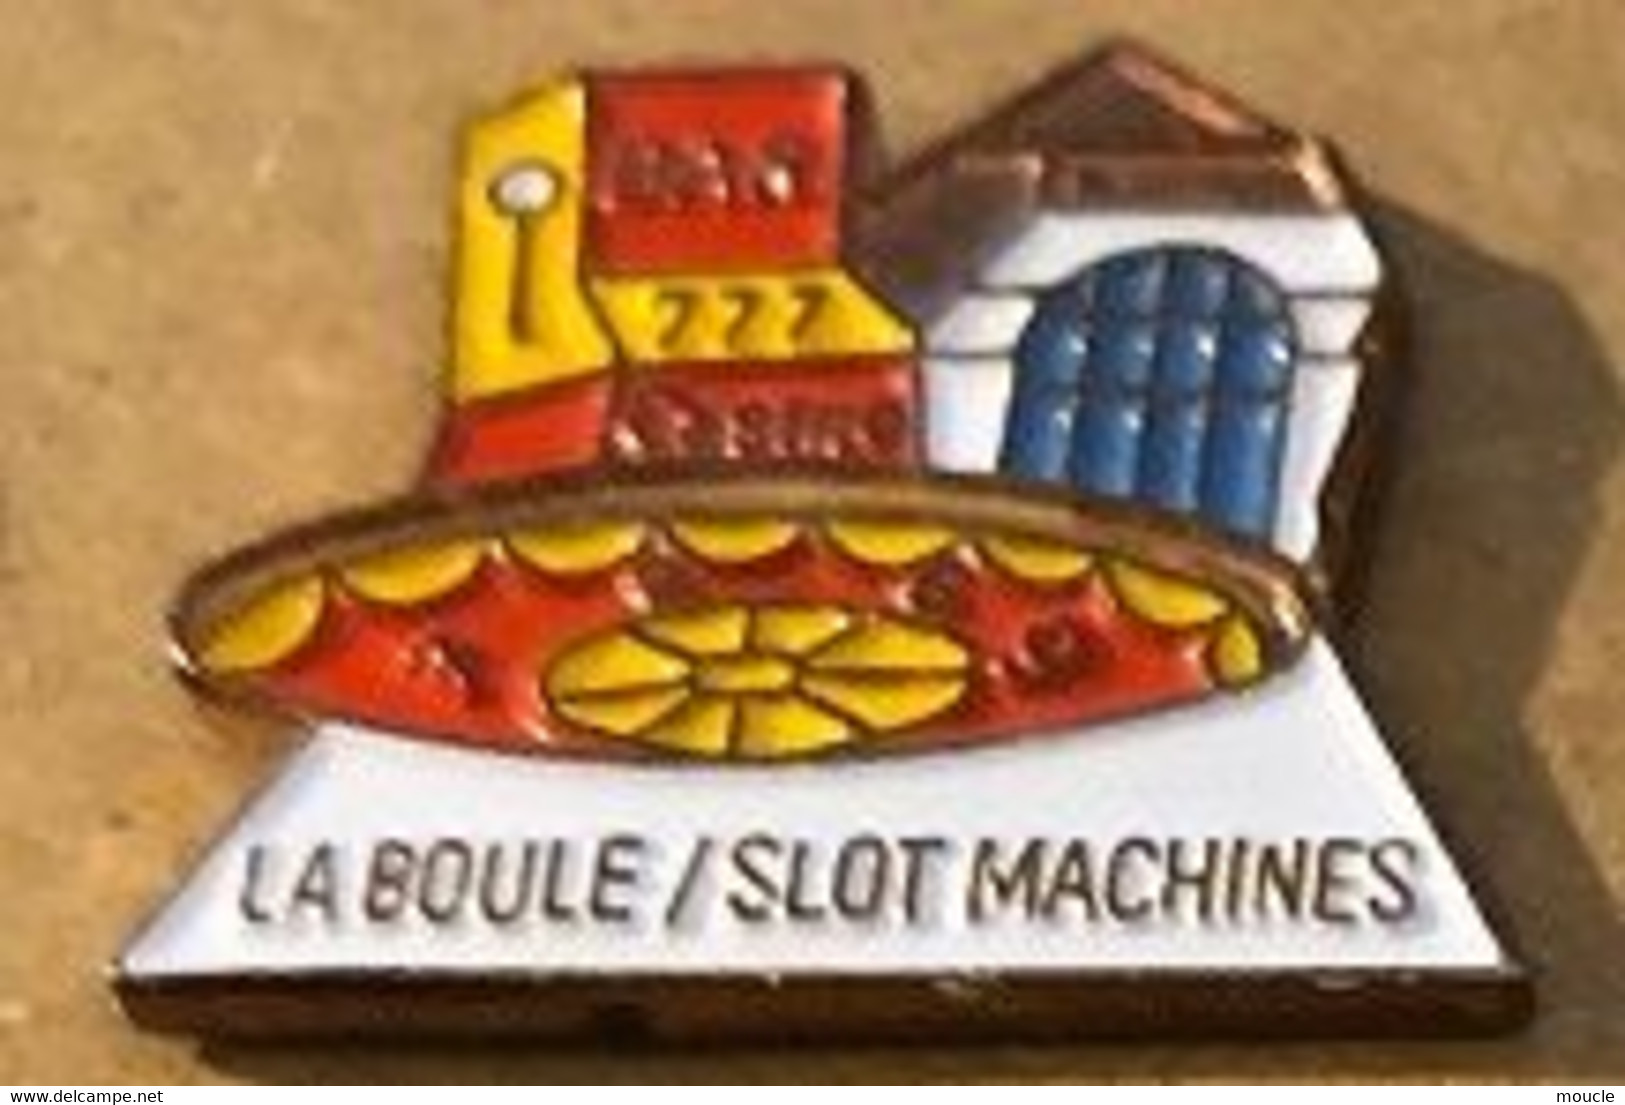 LA BOULE / SLOT MACHINES - BANDIT MANCHOT - CASINO - ROULETTE  - BAR - MACHINE A SOUS - MONEY - ARGENT - GELD -    (16) - Casinos